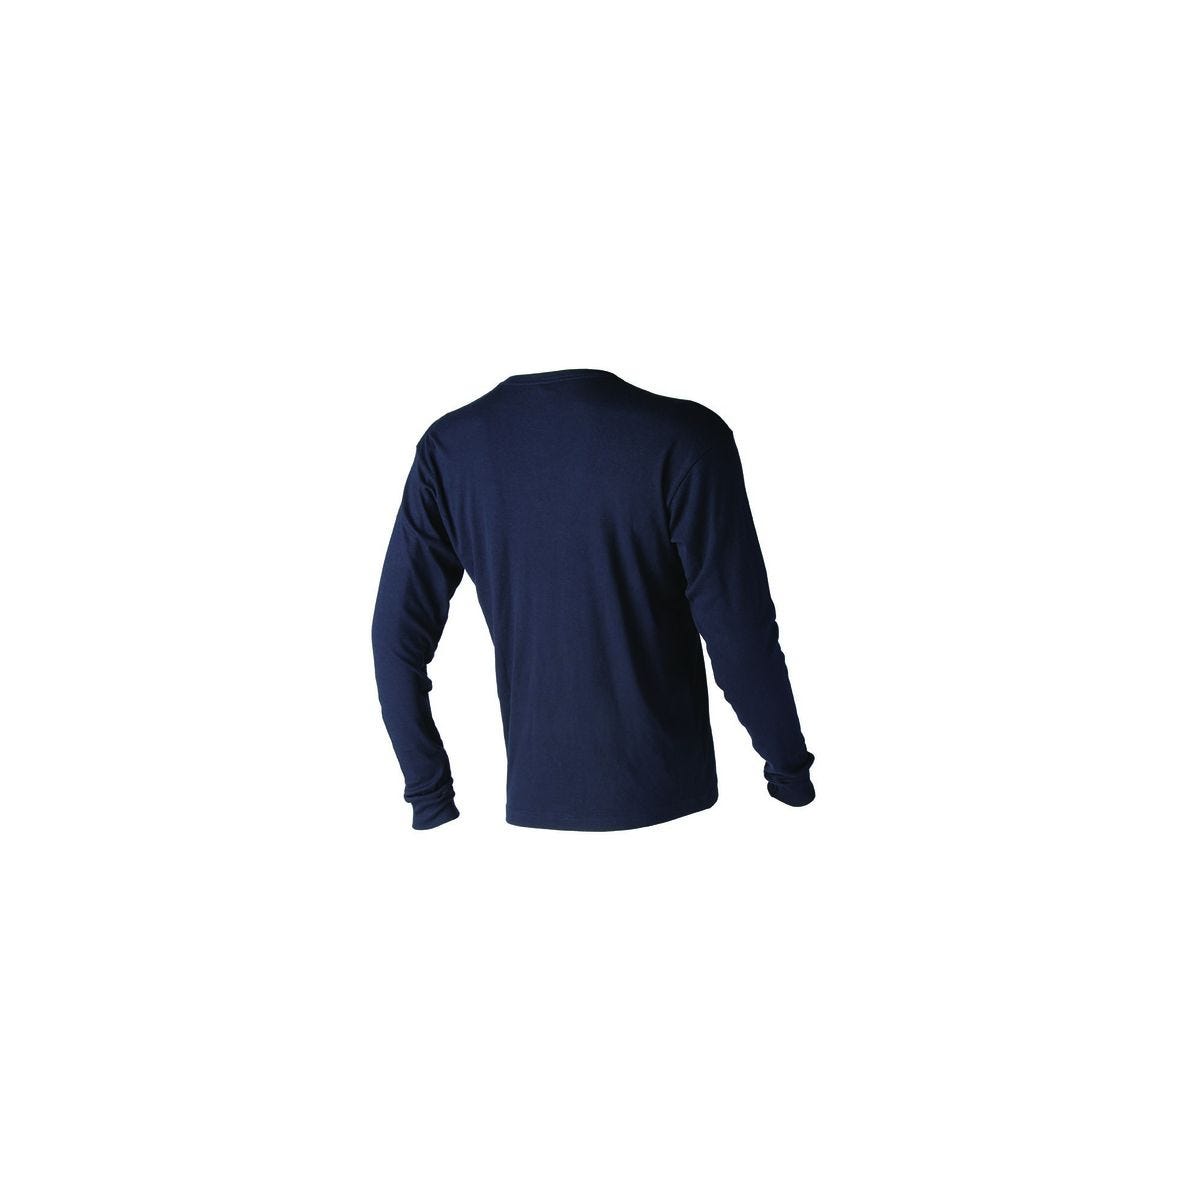 T-shirt SPURR multirisques en 180g/m² - COVERGUARD - Taille M 1